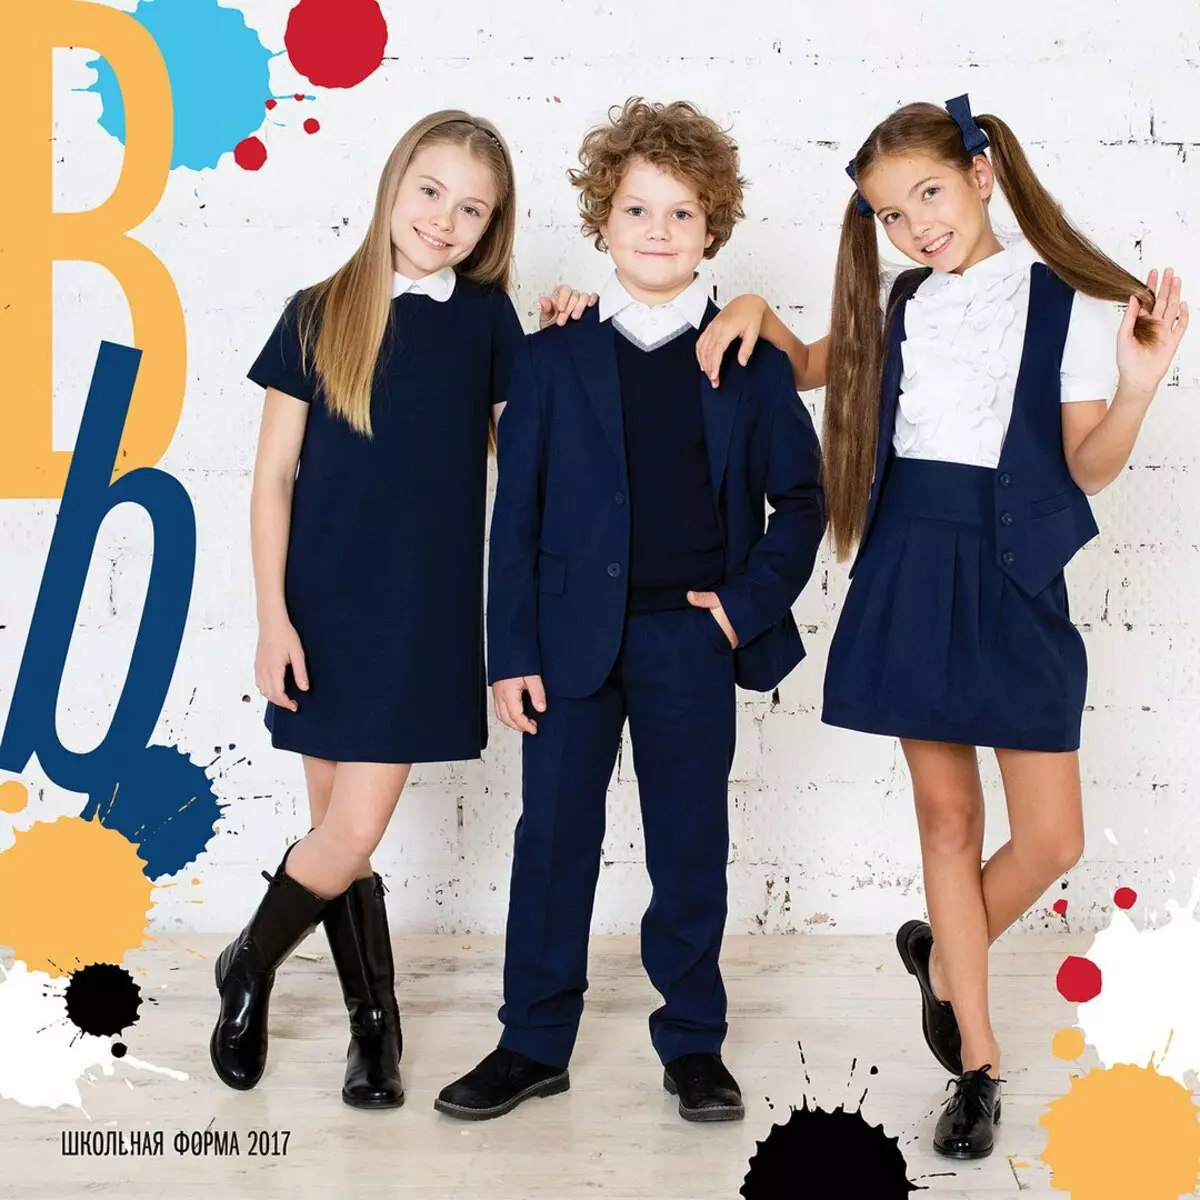 Tlačítko Blue (120 fotografií): Dětské lehké oblečení, větrovky a hračky, školní uniforma pro dívky a plavky, recenze o kvalitě 3805_13